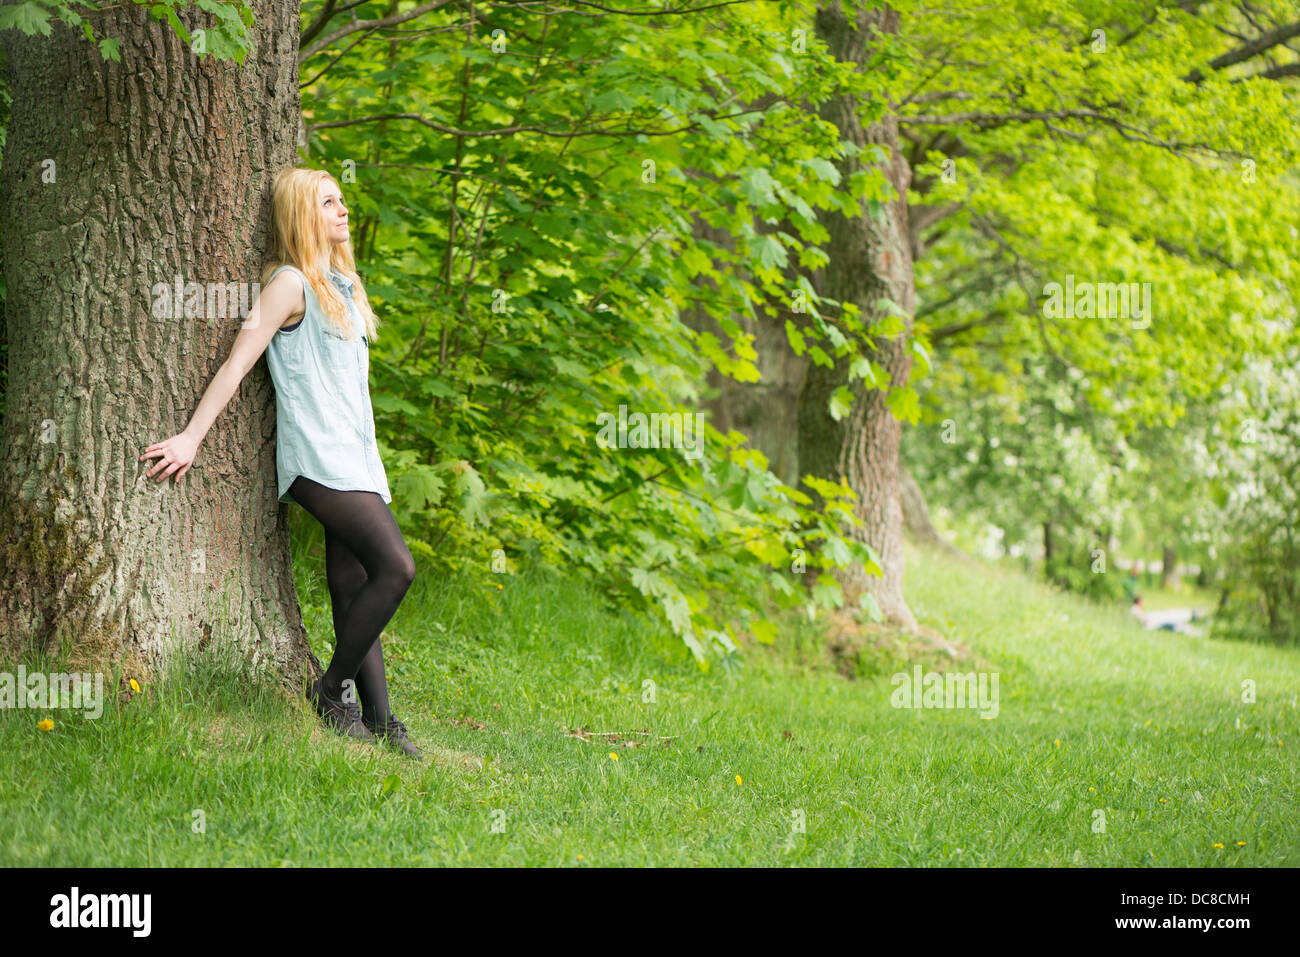 Natur-Szene mit einer jungen attraktiven Frau lehnte sich gegen einen Baum in einem park Stockfoto